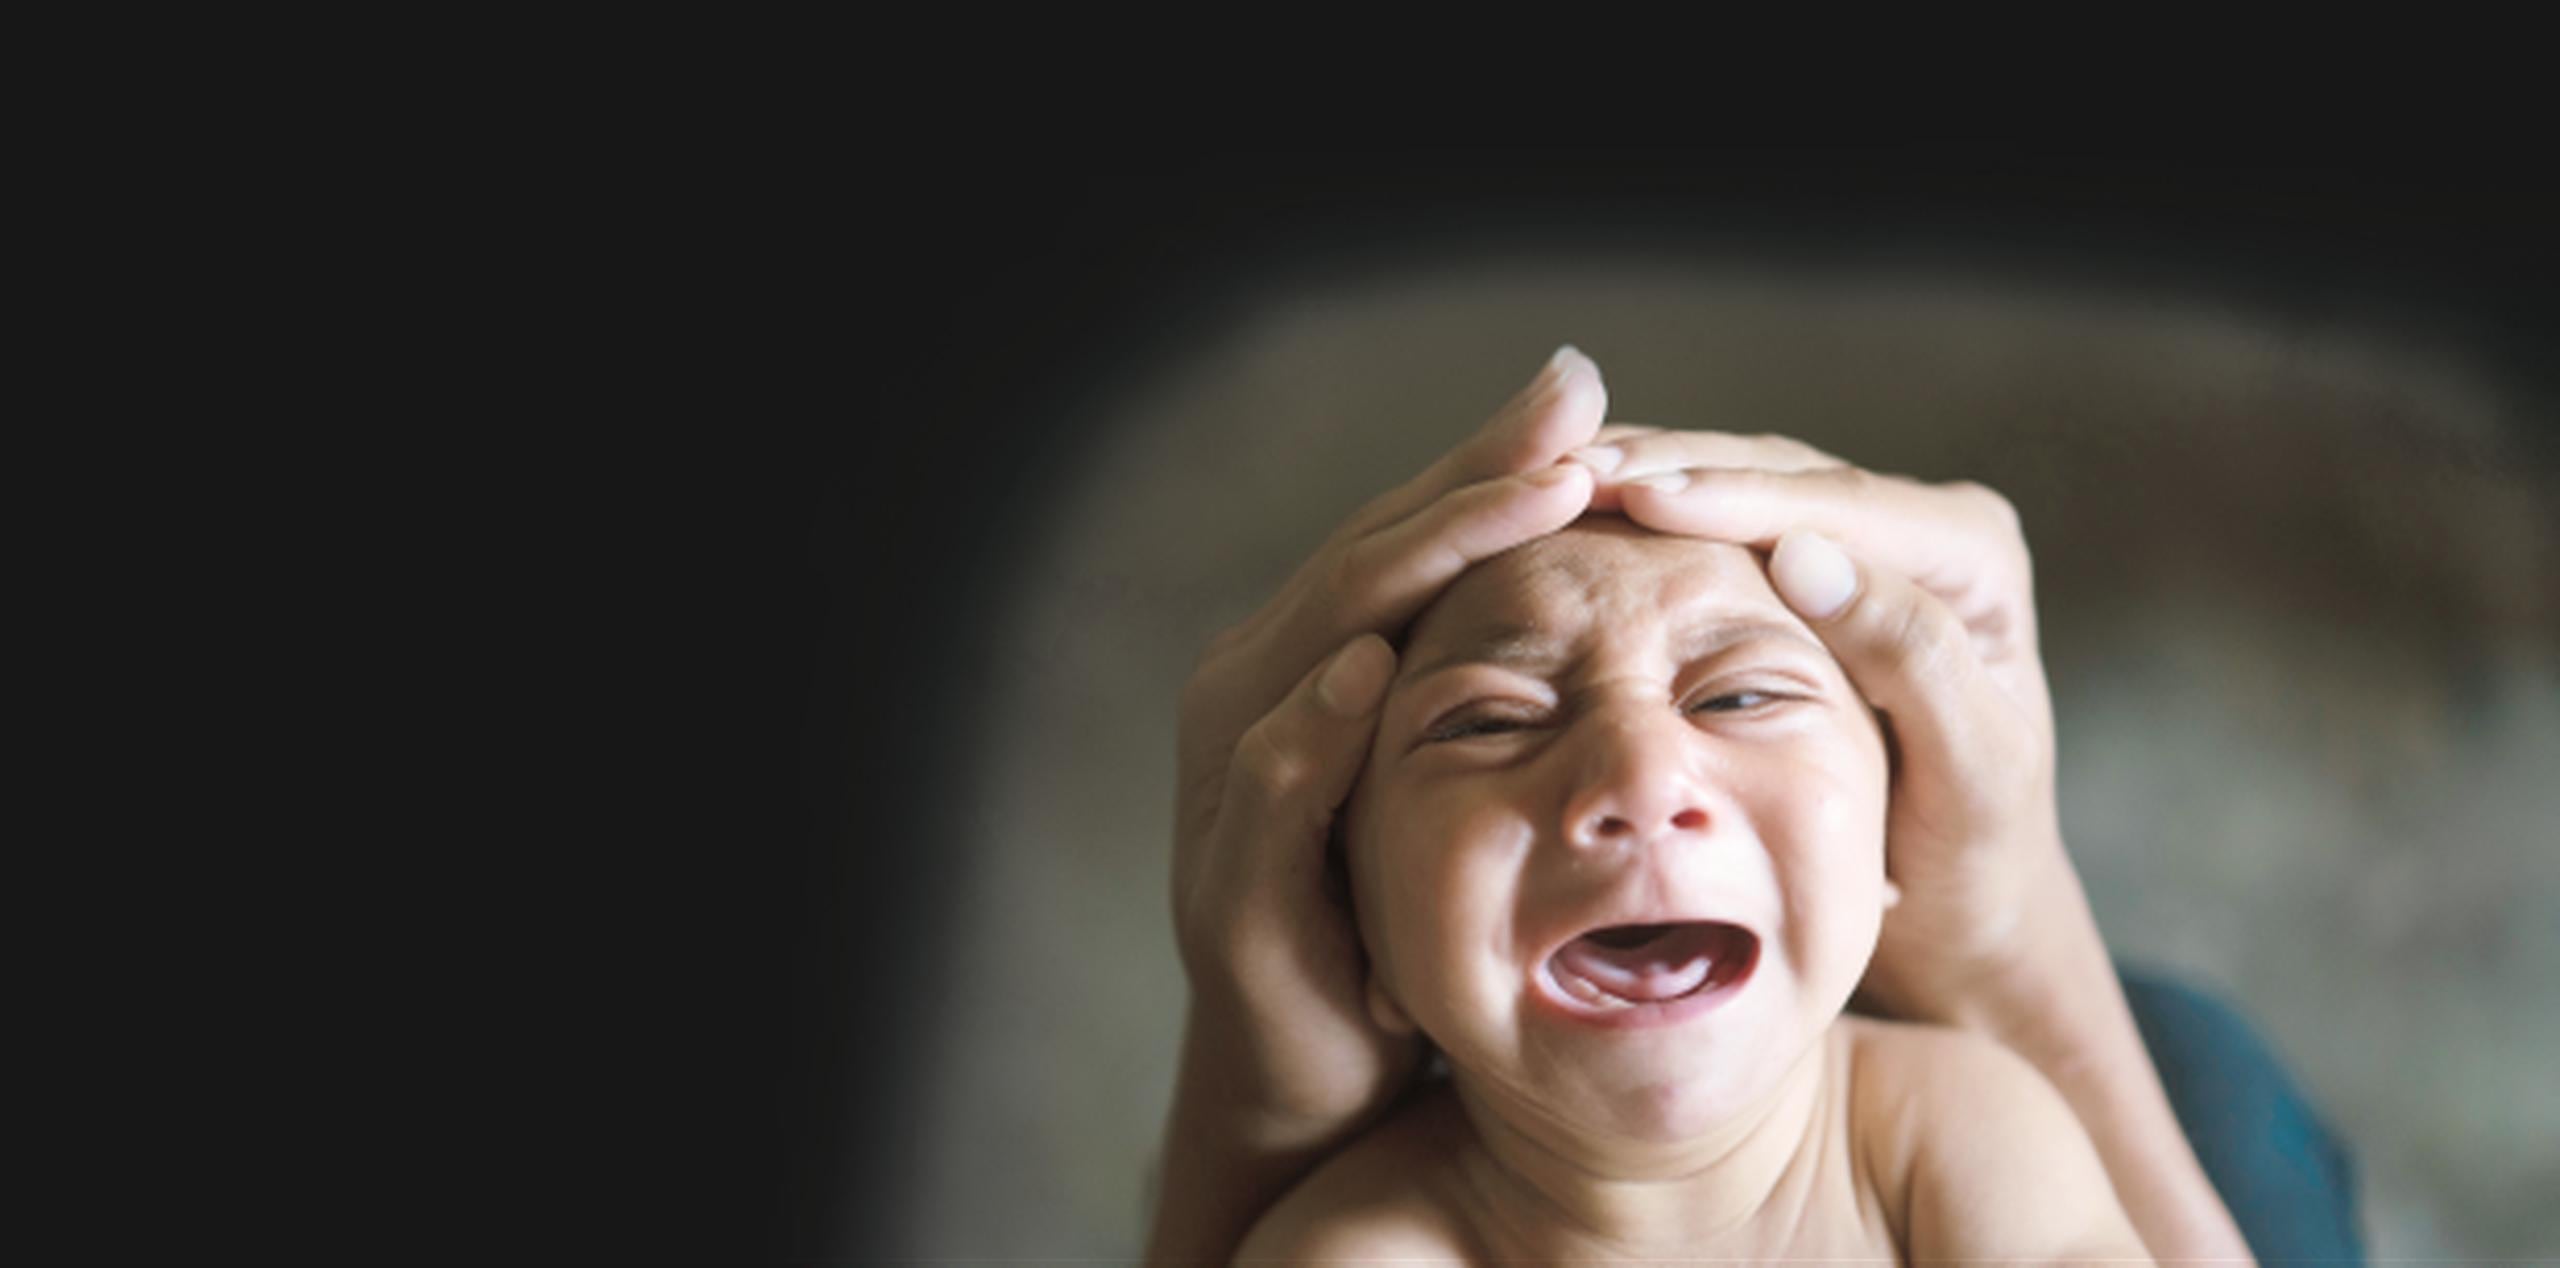 La microcefalia es una condición congénita que provoca que el cerebro no se desarrolle completamente y los bebés tengan una cabeza muy pequeña. (Archivo)